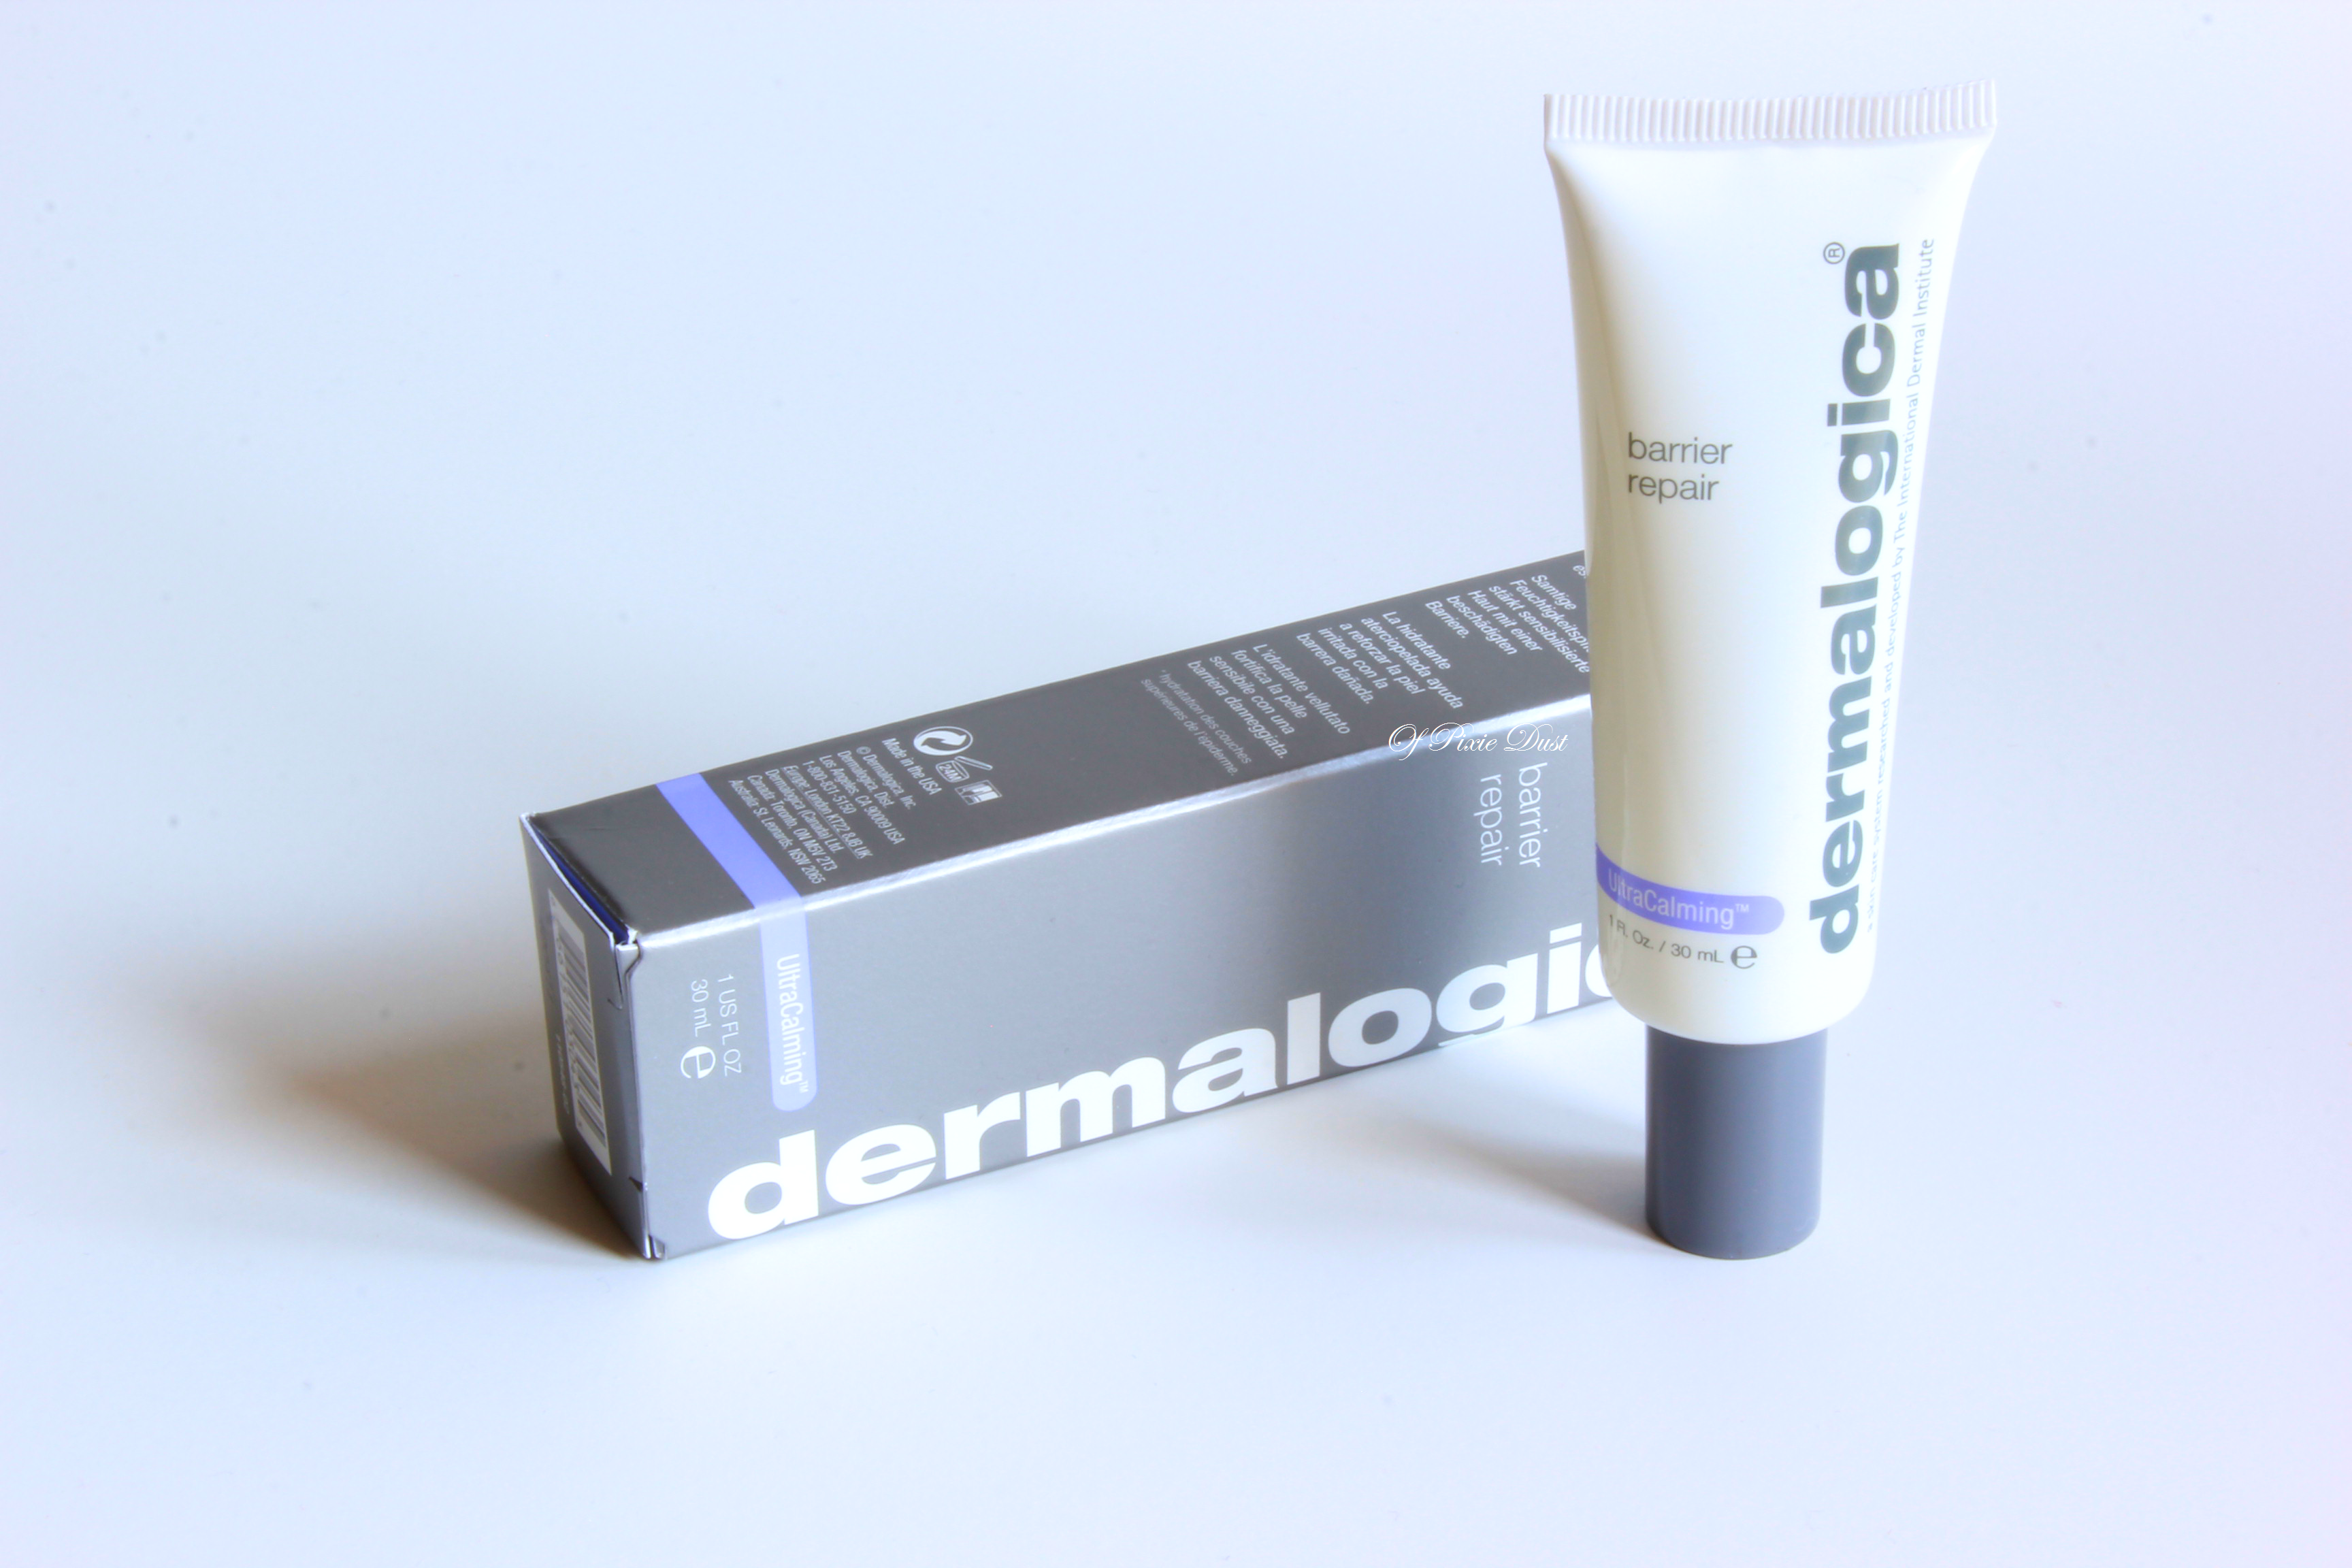 Dermalogica Barrier Repair là mỹ phẩm cho da có tác dụng dưỡng ẩm và bảo vệ da